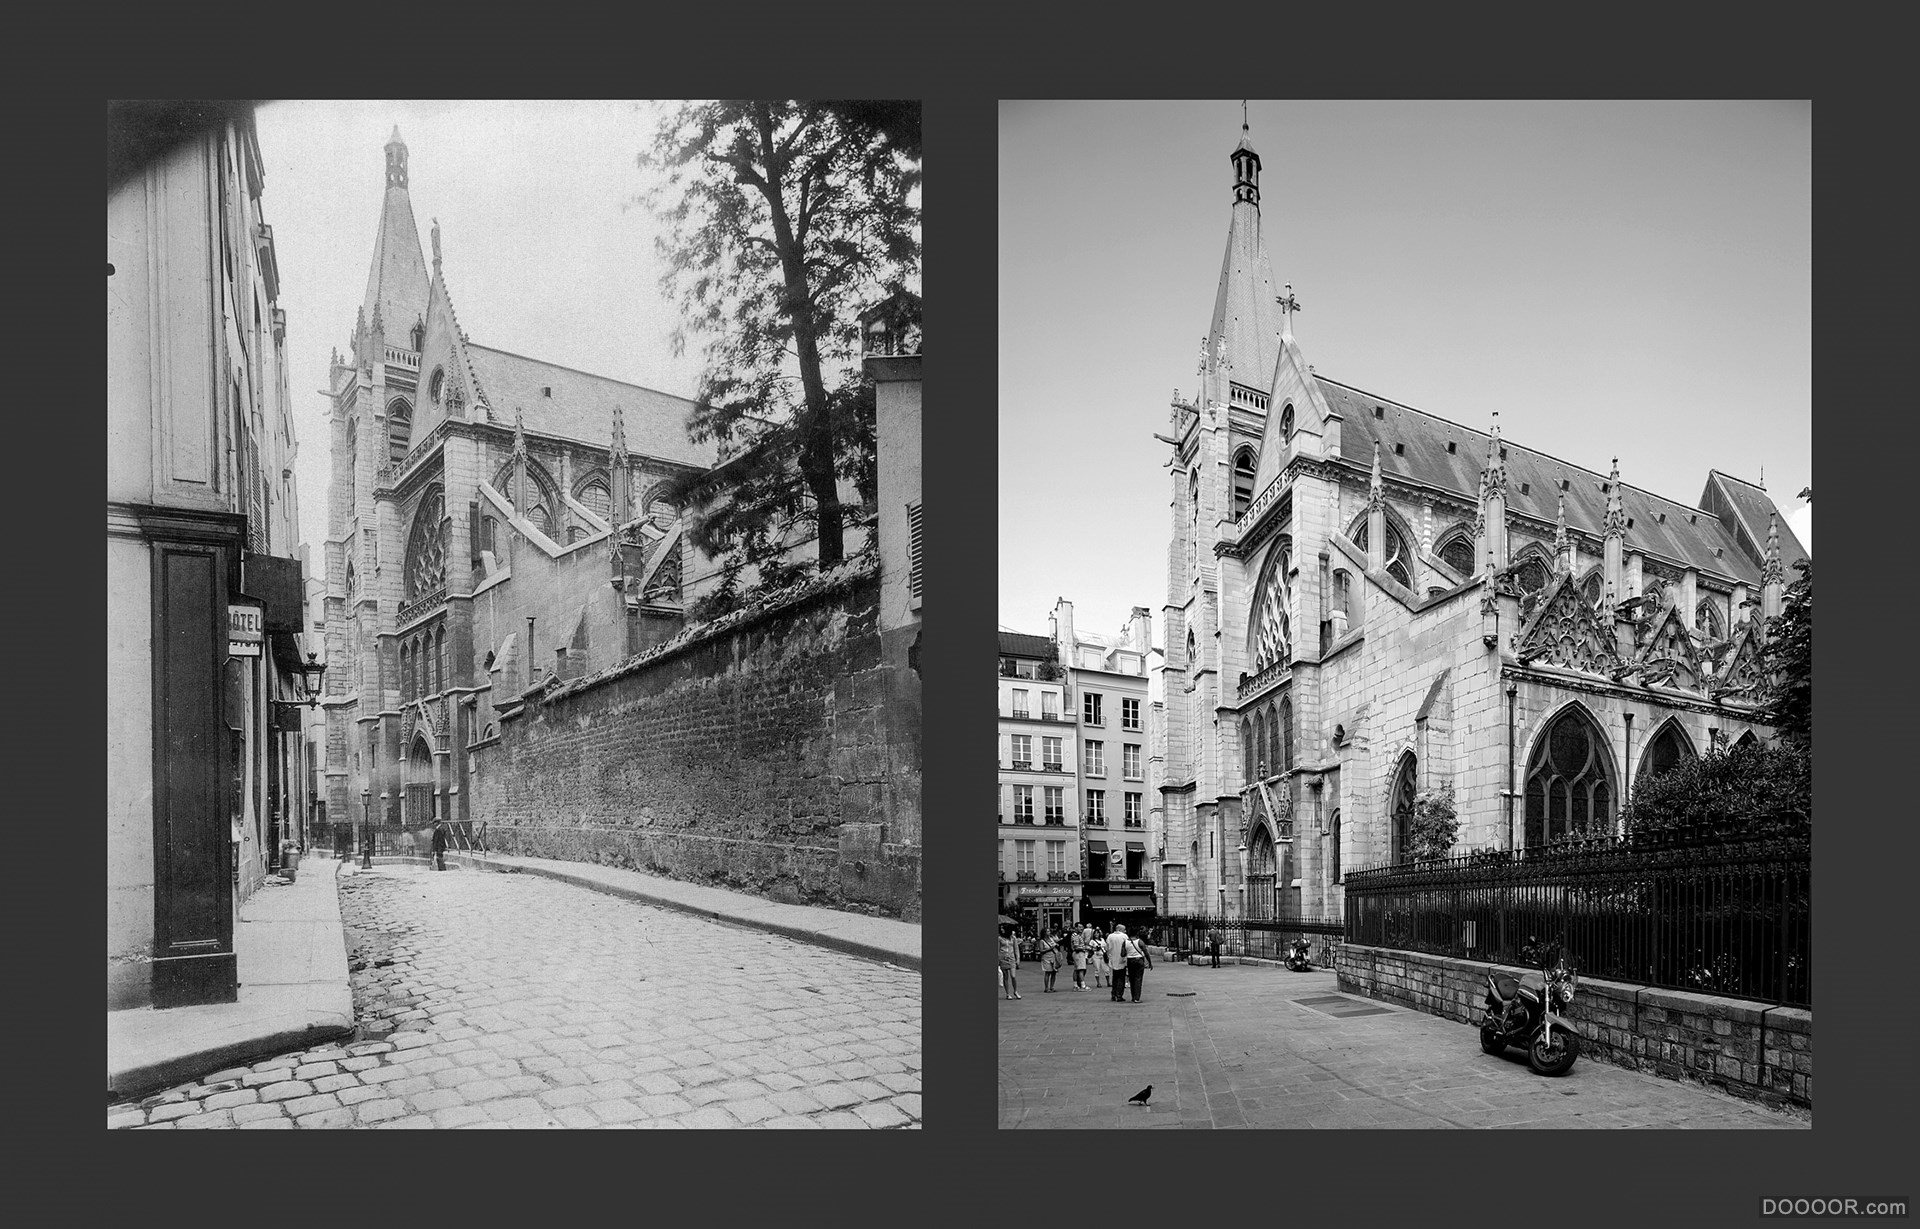 过去与现在-巴黎街头照片对比 [50P] (4).jpg